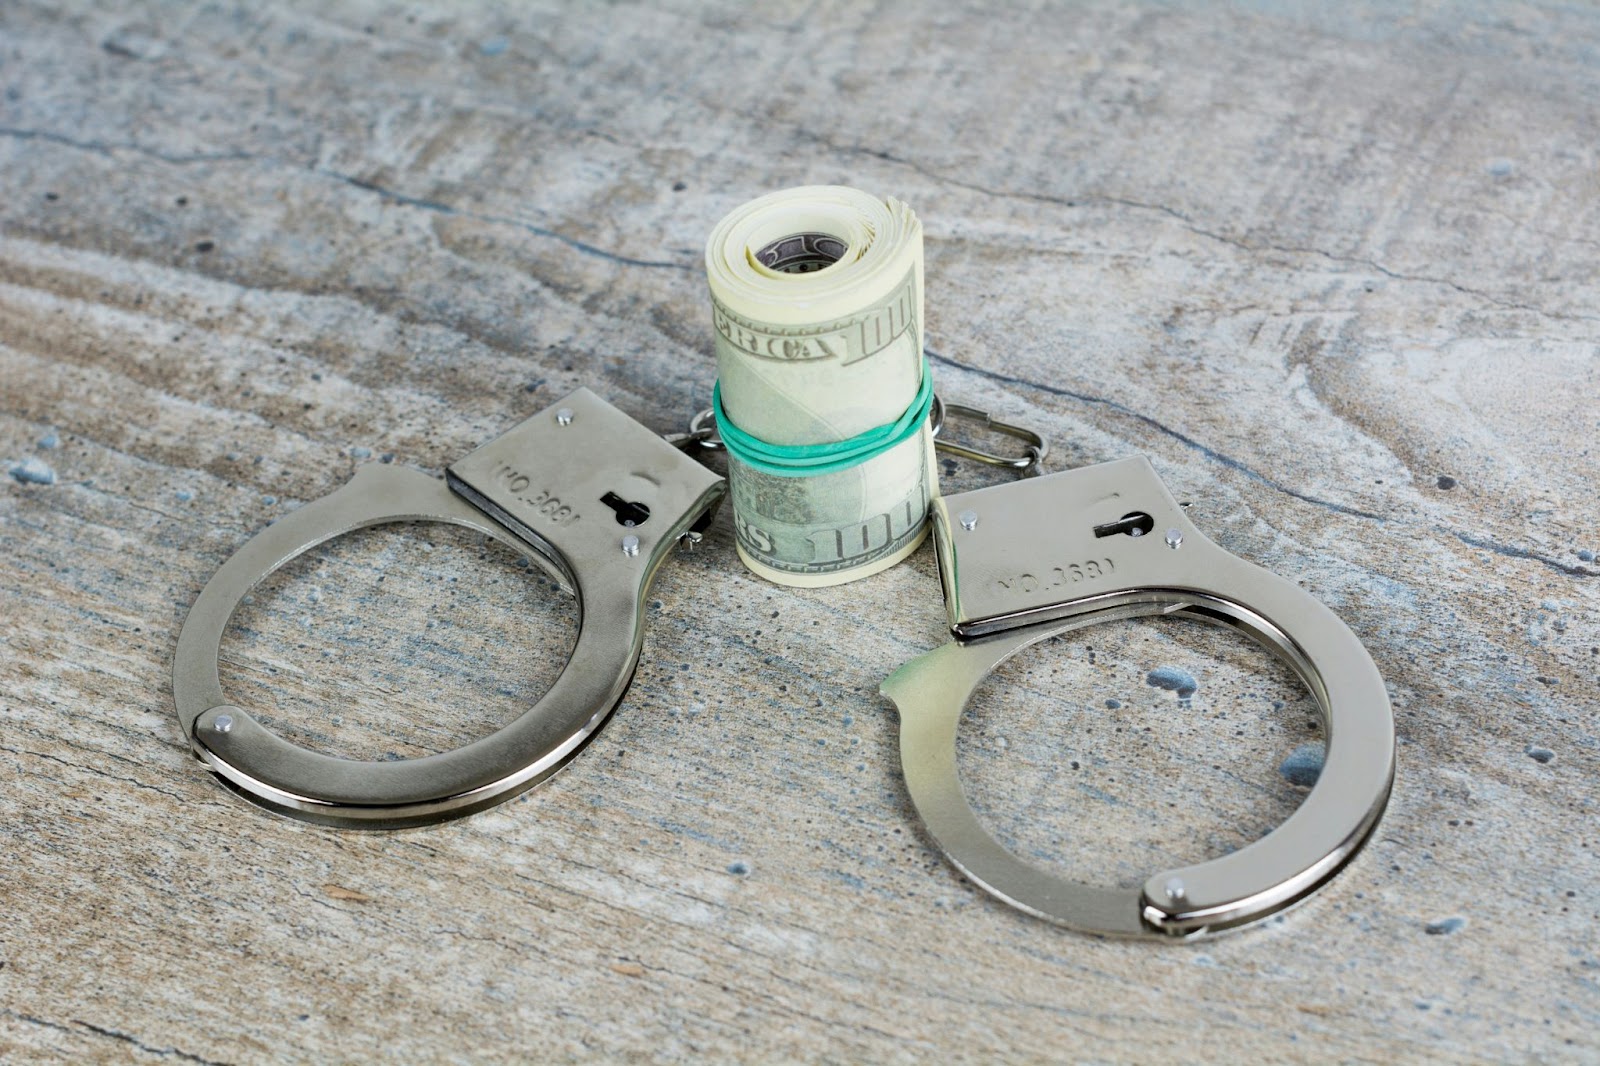 Handcuffs around a wad of dollar bills